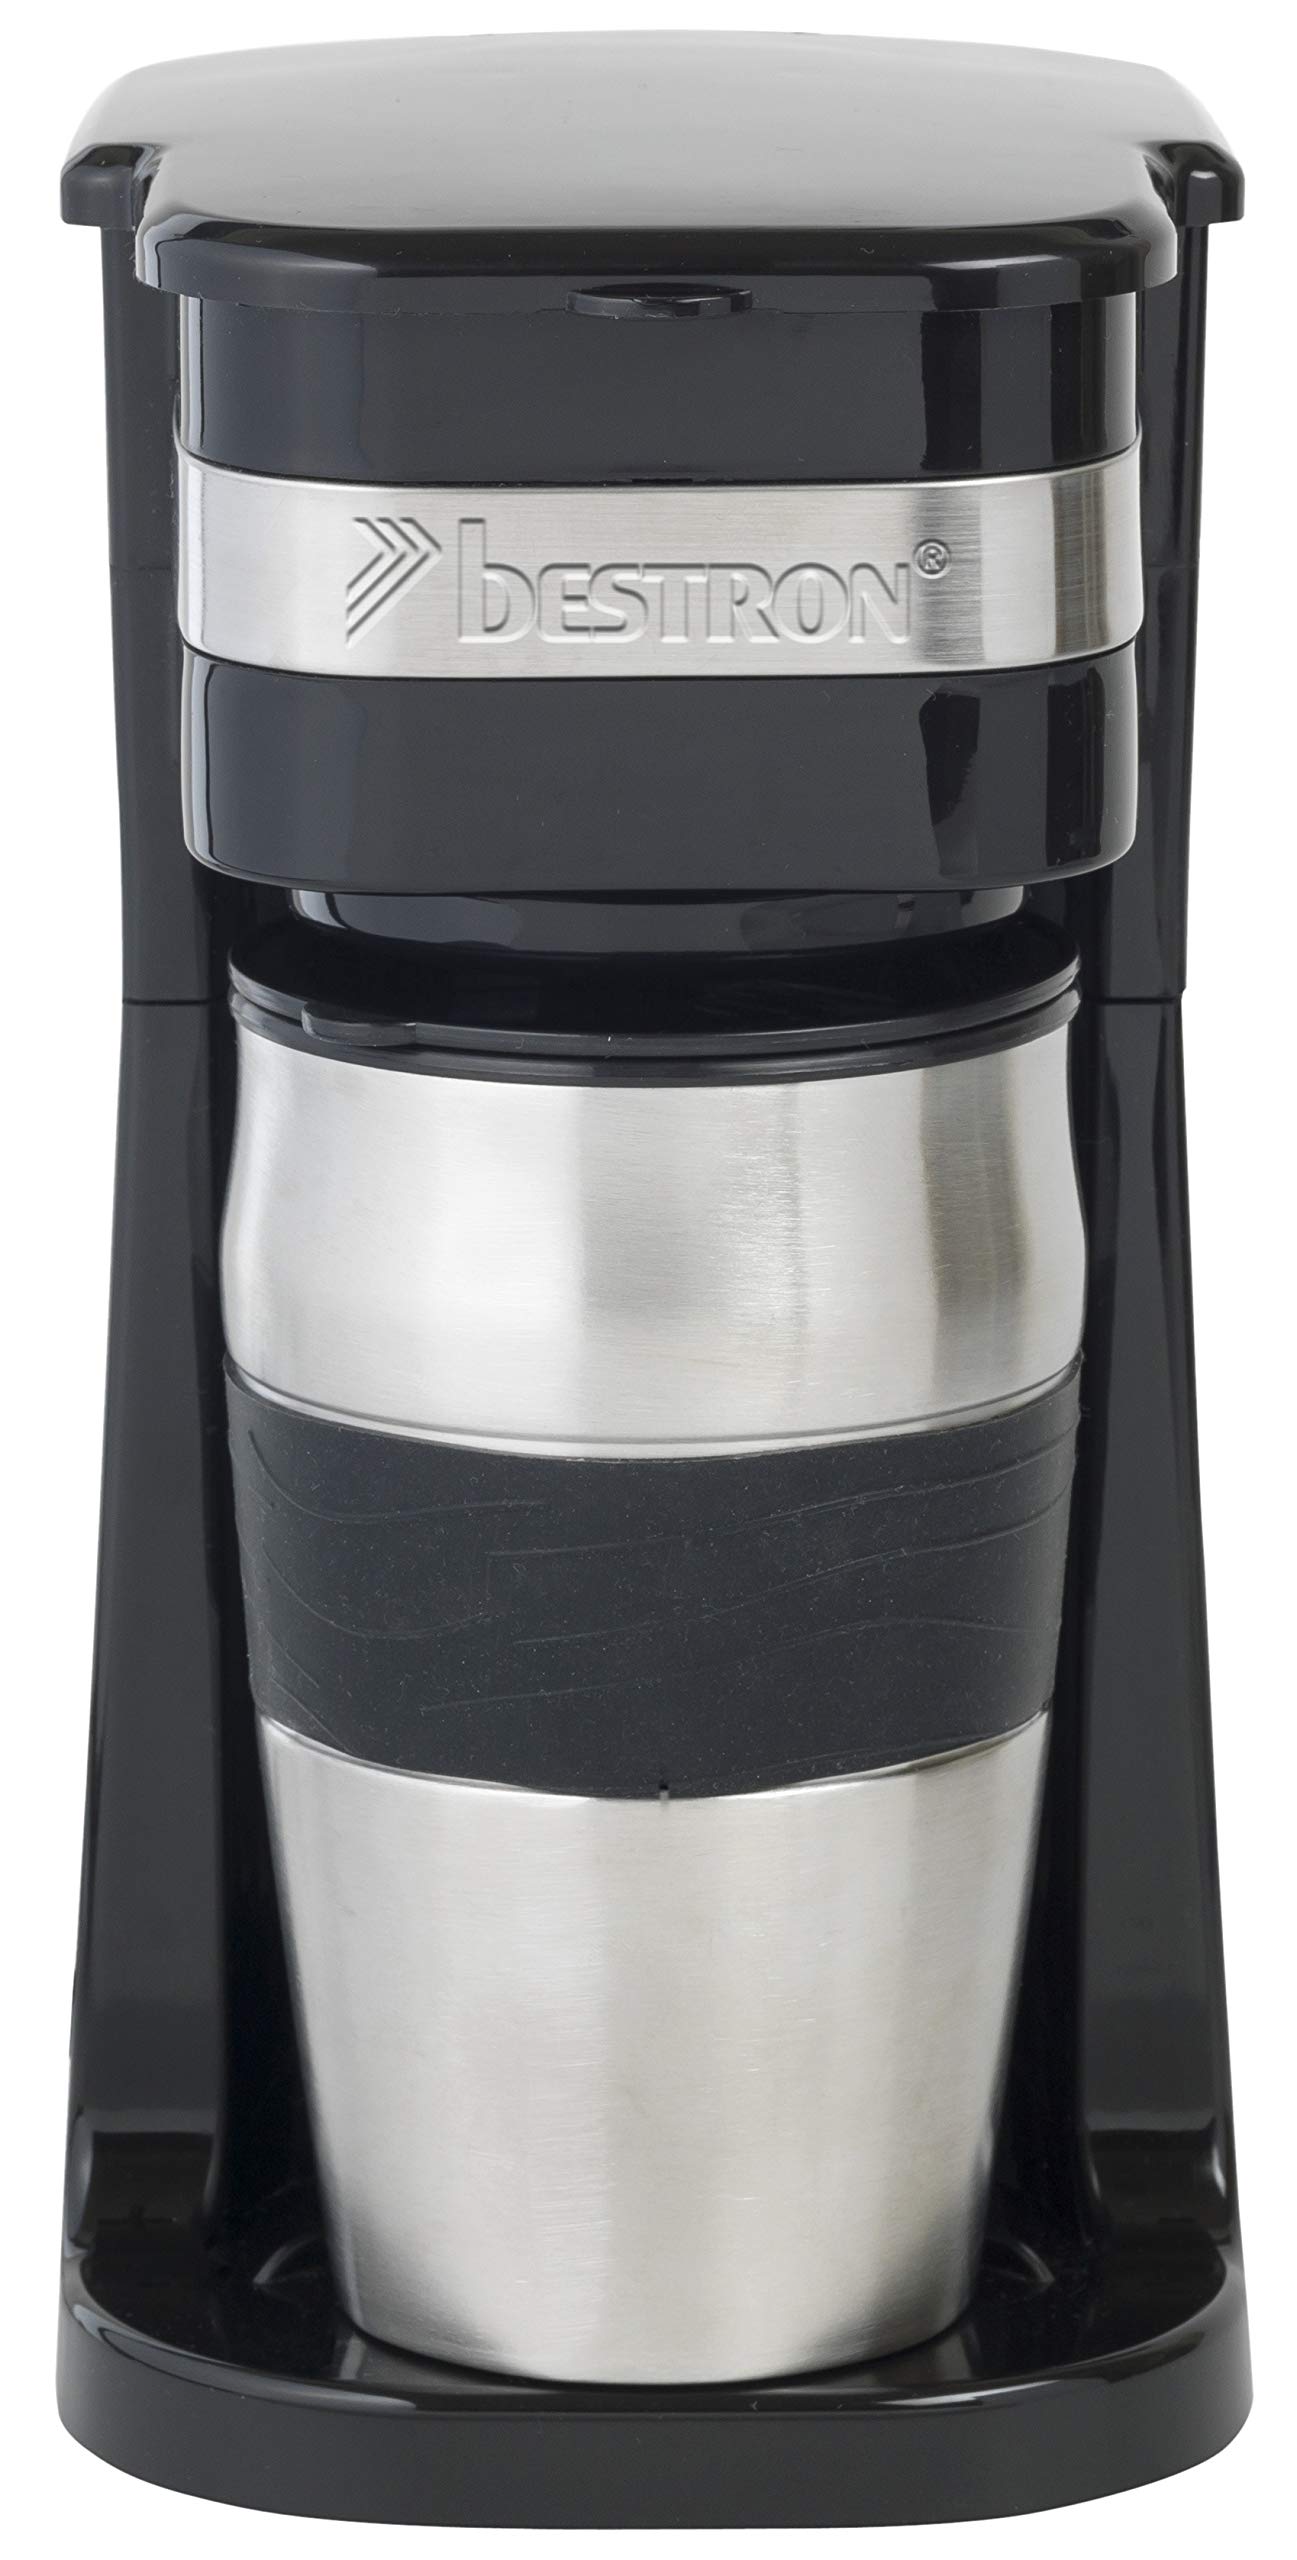 Promotions Bestron Cafetière électrique avec mug isotherme, Pour café filtre moulu, 2 Tasses, 750 W, Acier inoxydable, Noir 1leLCCAqa boutique en ligne